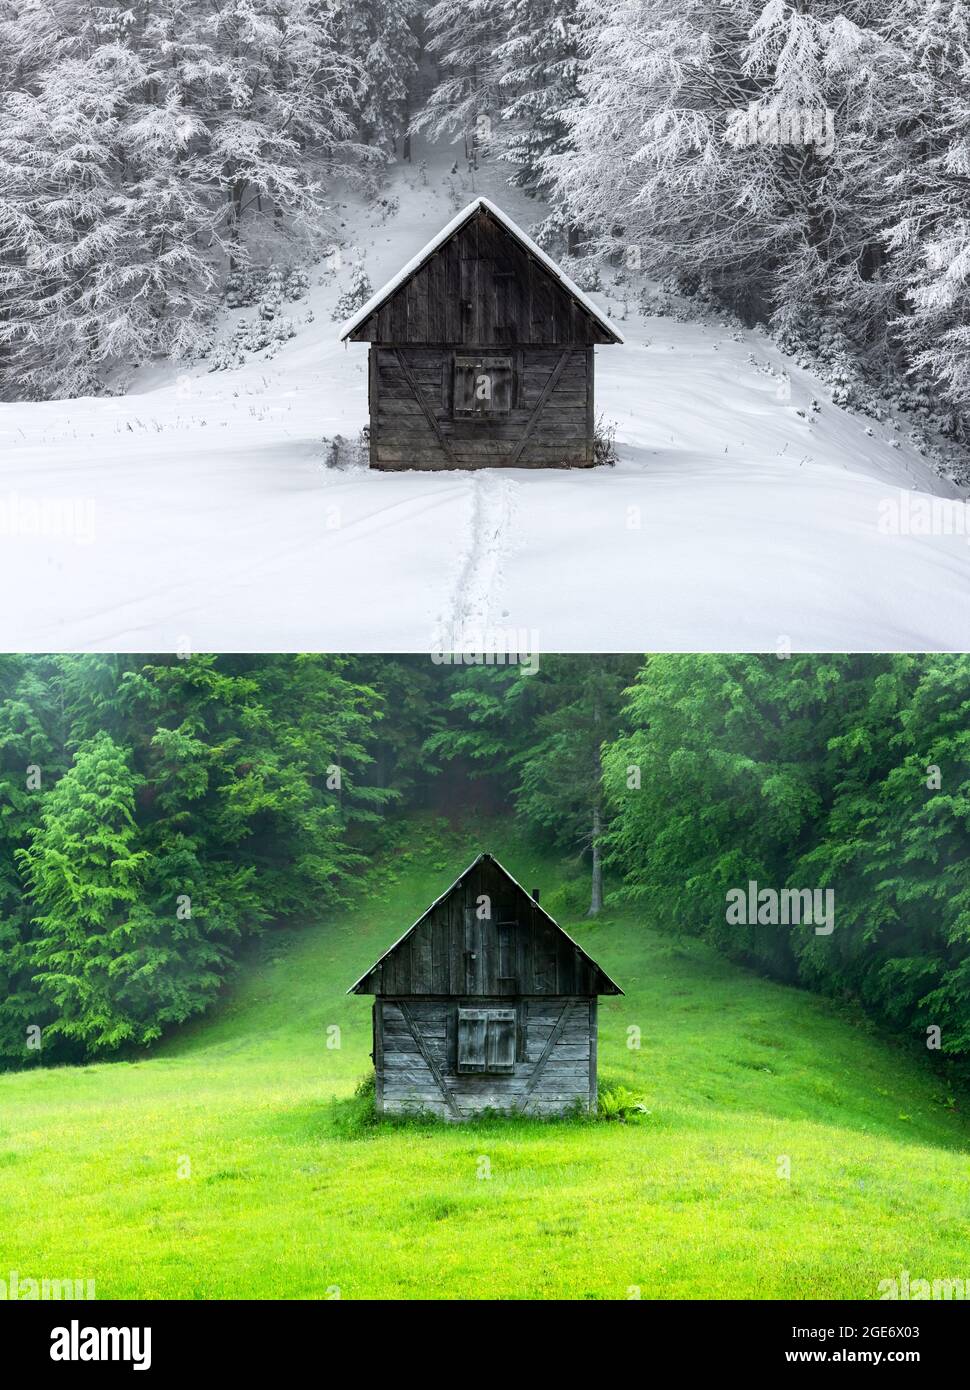 Collage aus zwei Bildern einer Holzhütte im Wald zu verschiedenen Jahreszeiten - Sommer und Winter. Fantastische Winterlandschaft mit Holzhaus in verschneiten Bergen. Alte Hütte in saftig grünen Nebelwäldern Stockfoto